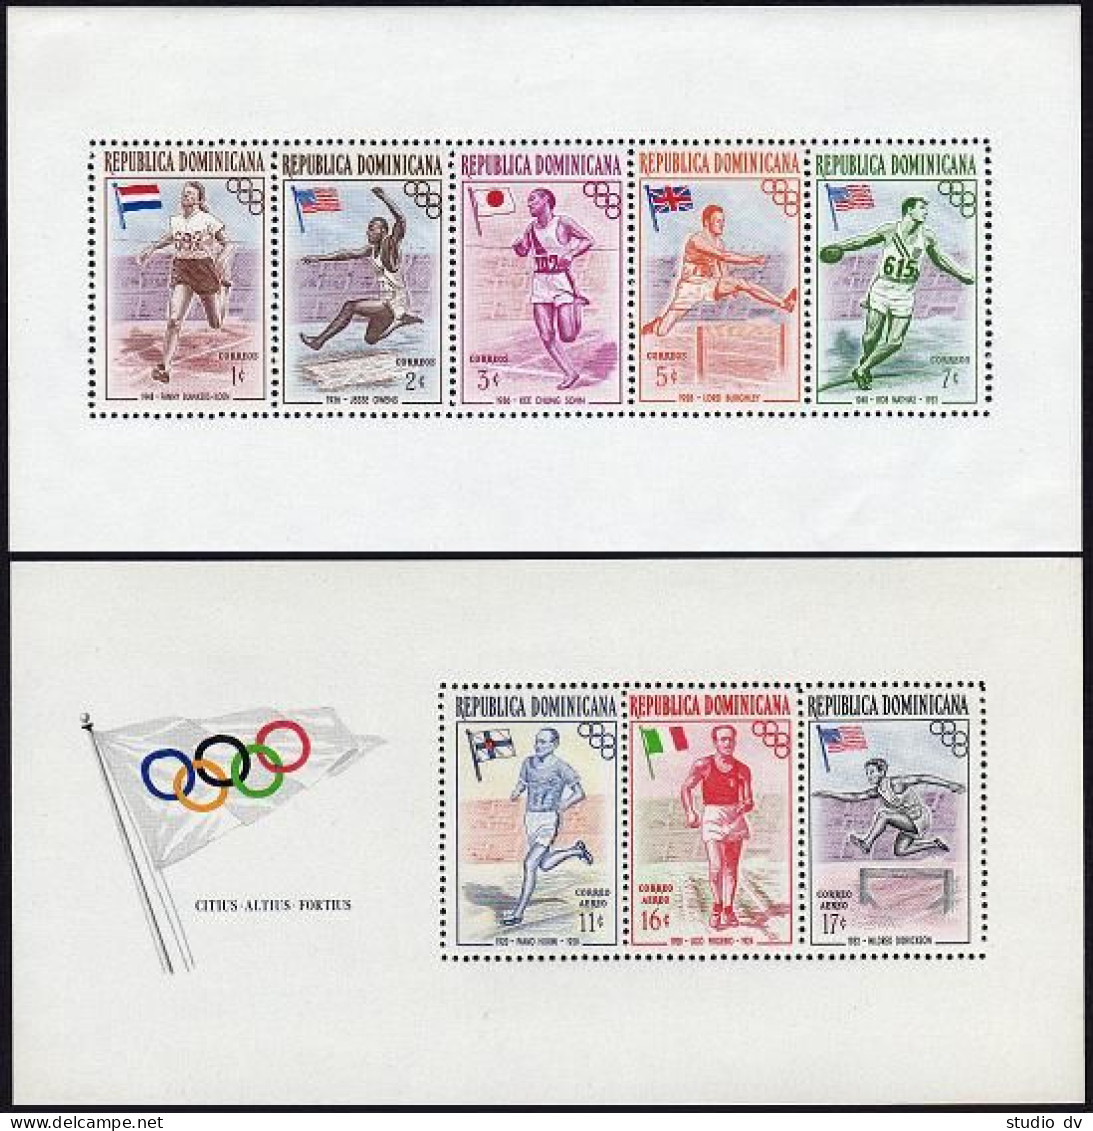 Dominican Rep 478a,C99a A,B,mint.Mi Bl.3A-4A,3B-4B. Olympics Melbourne-1956. - Dominicaine (République)